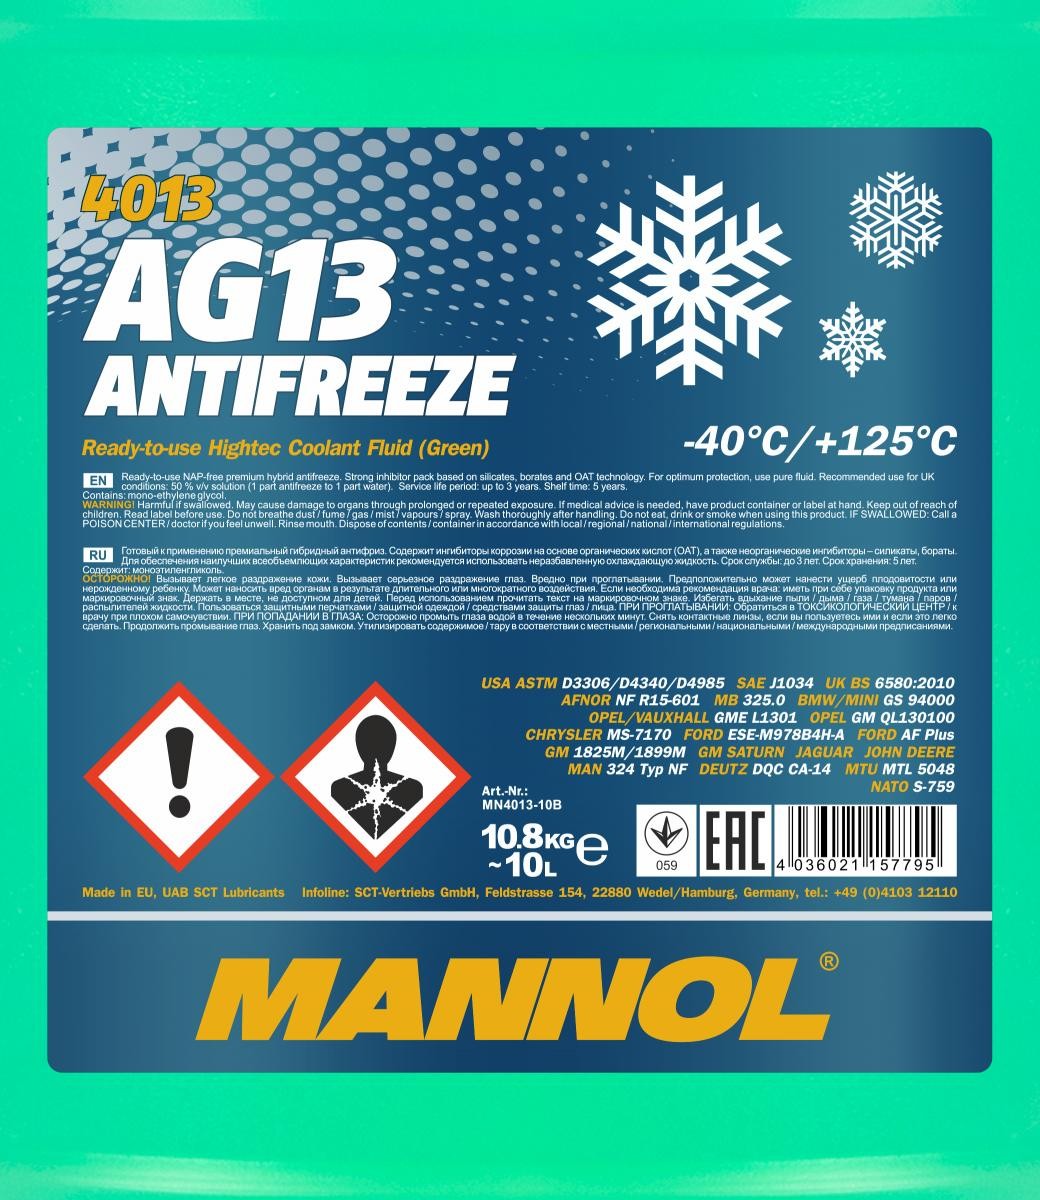 Mannol 4013 Kühlerfrostschutz Antifreeze AG13 Hightec -40 Fertigmischung 10 Liter